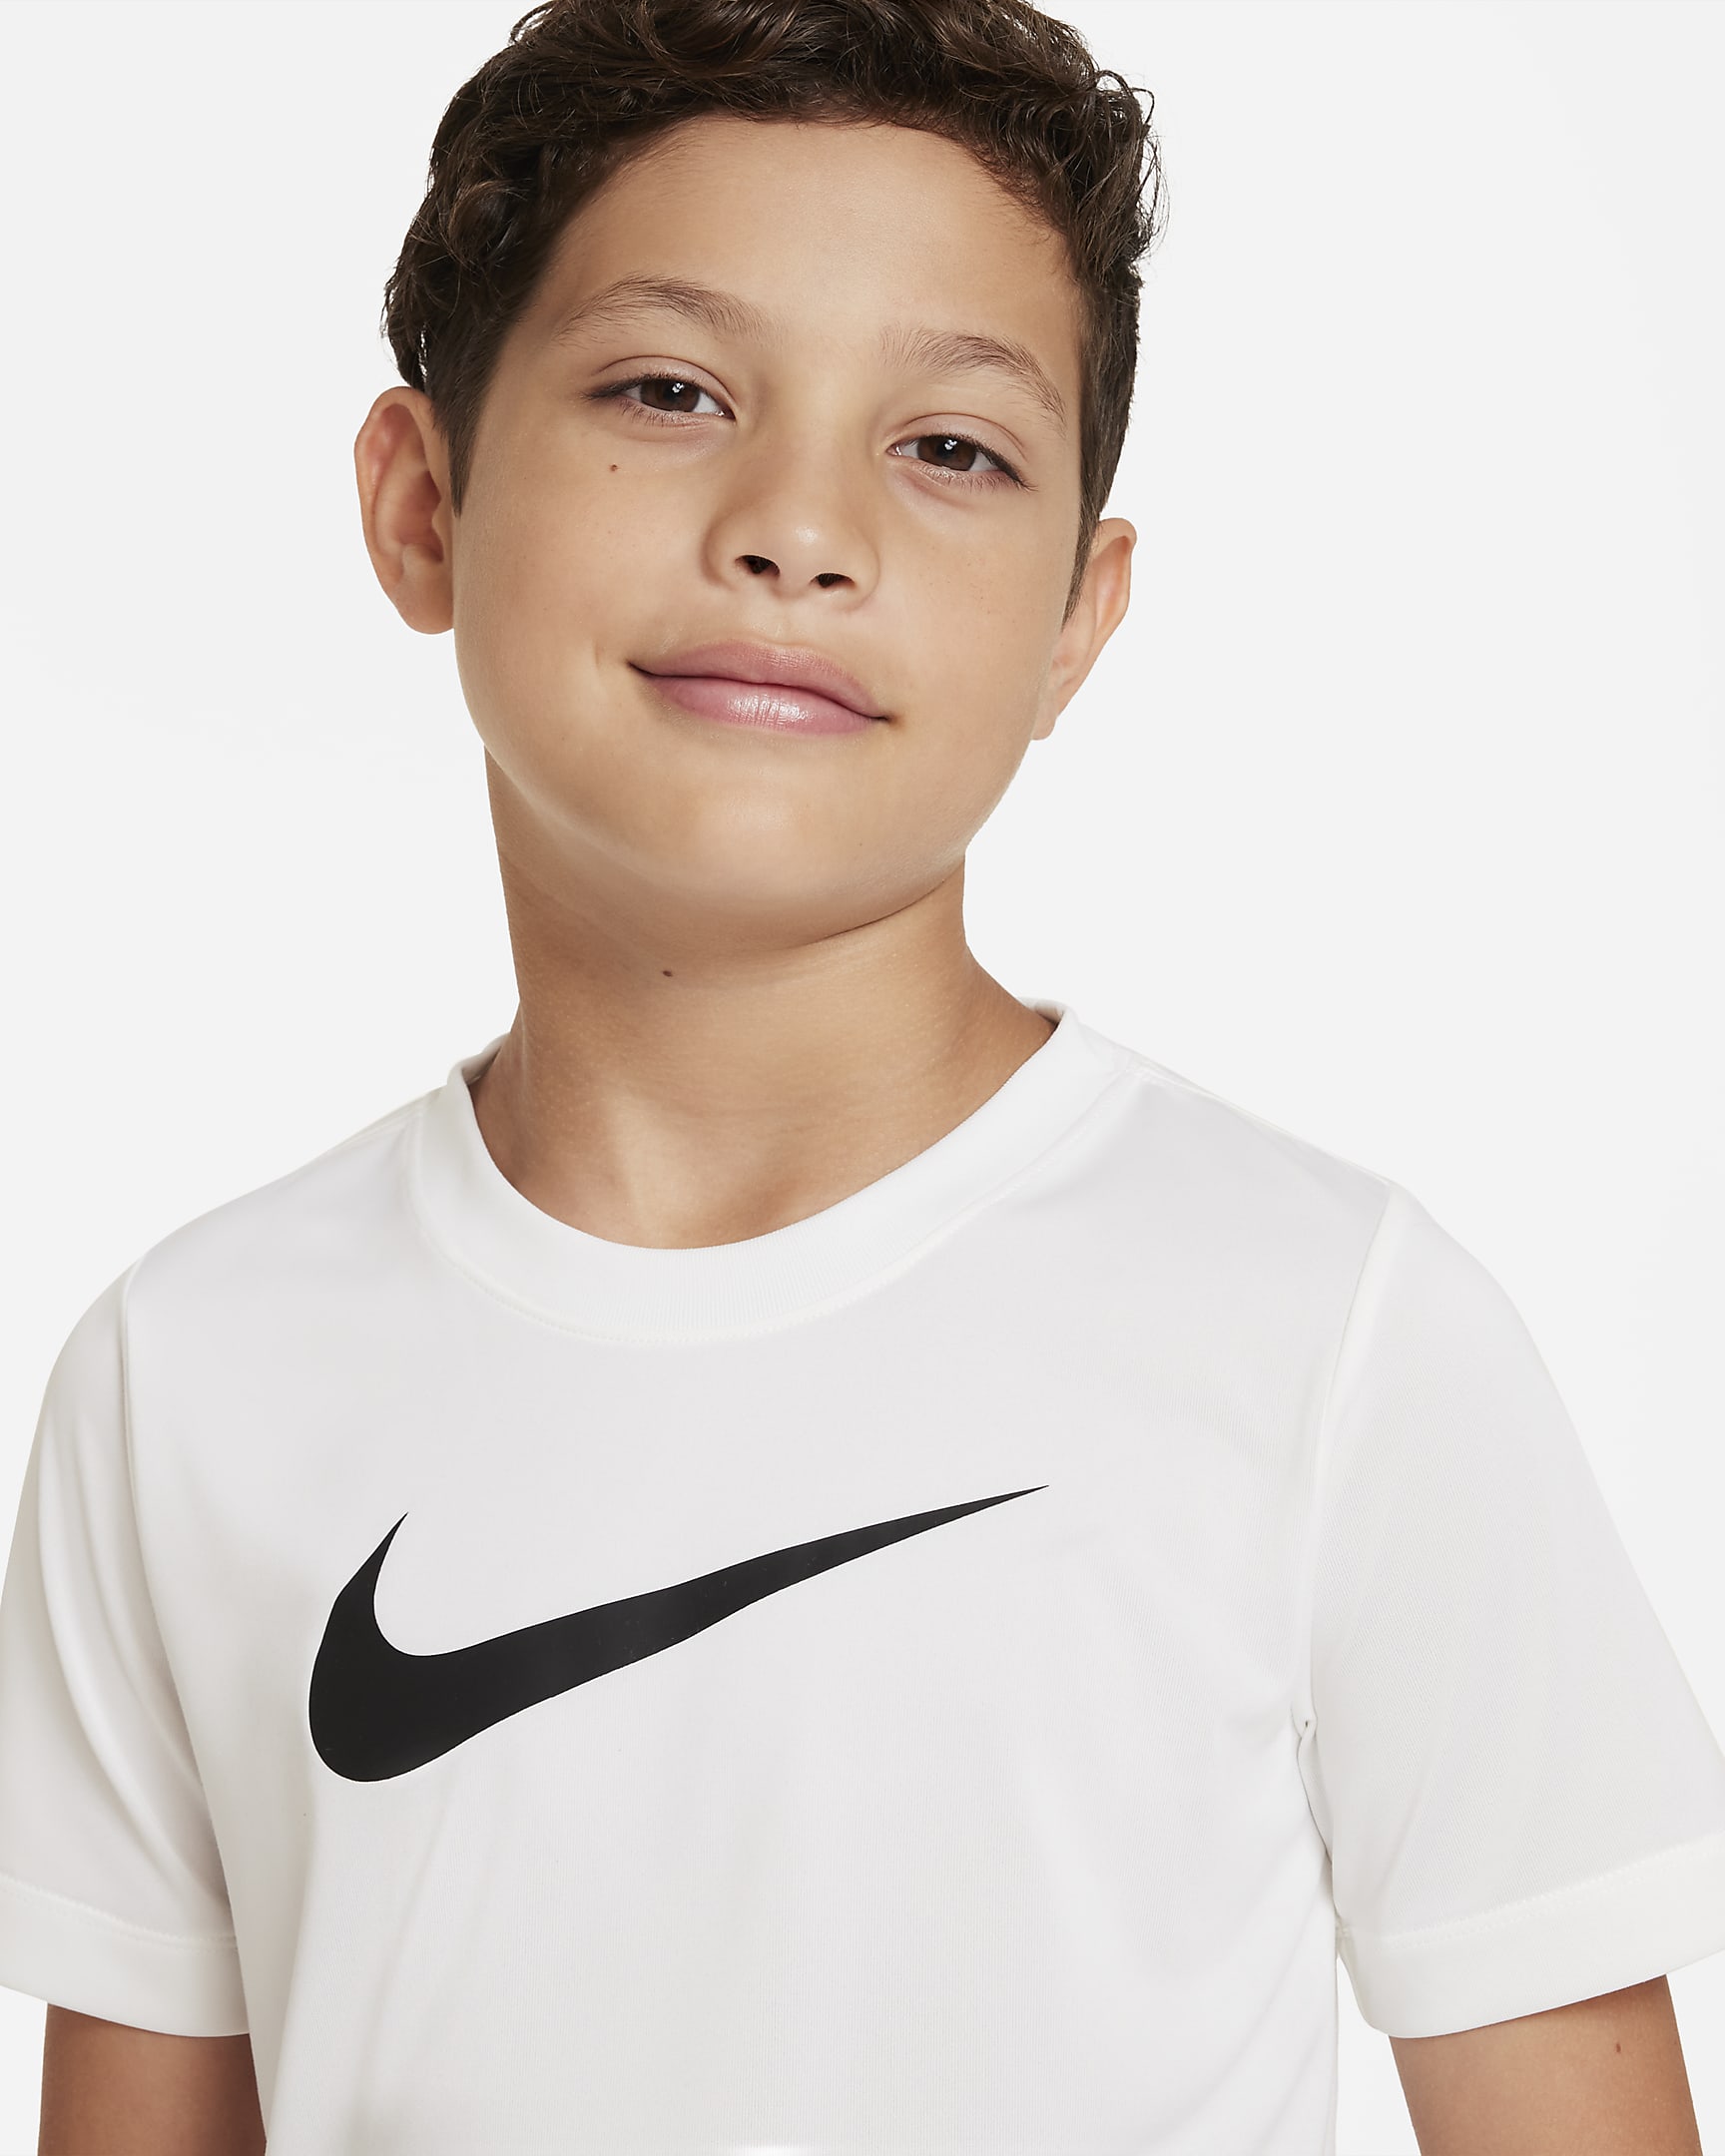 Nike Dri-FIT Legend Big Kids' (Boys') T-Shirt. Nike.com